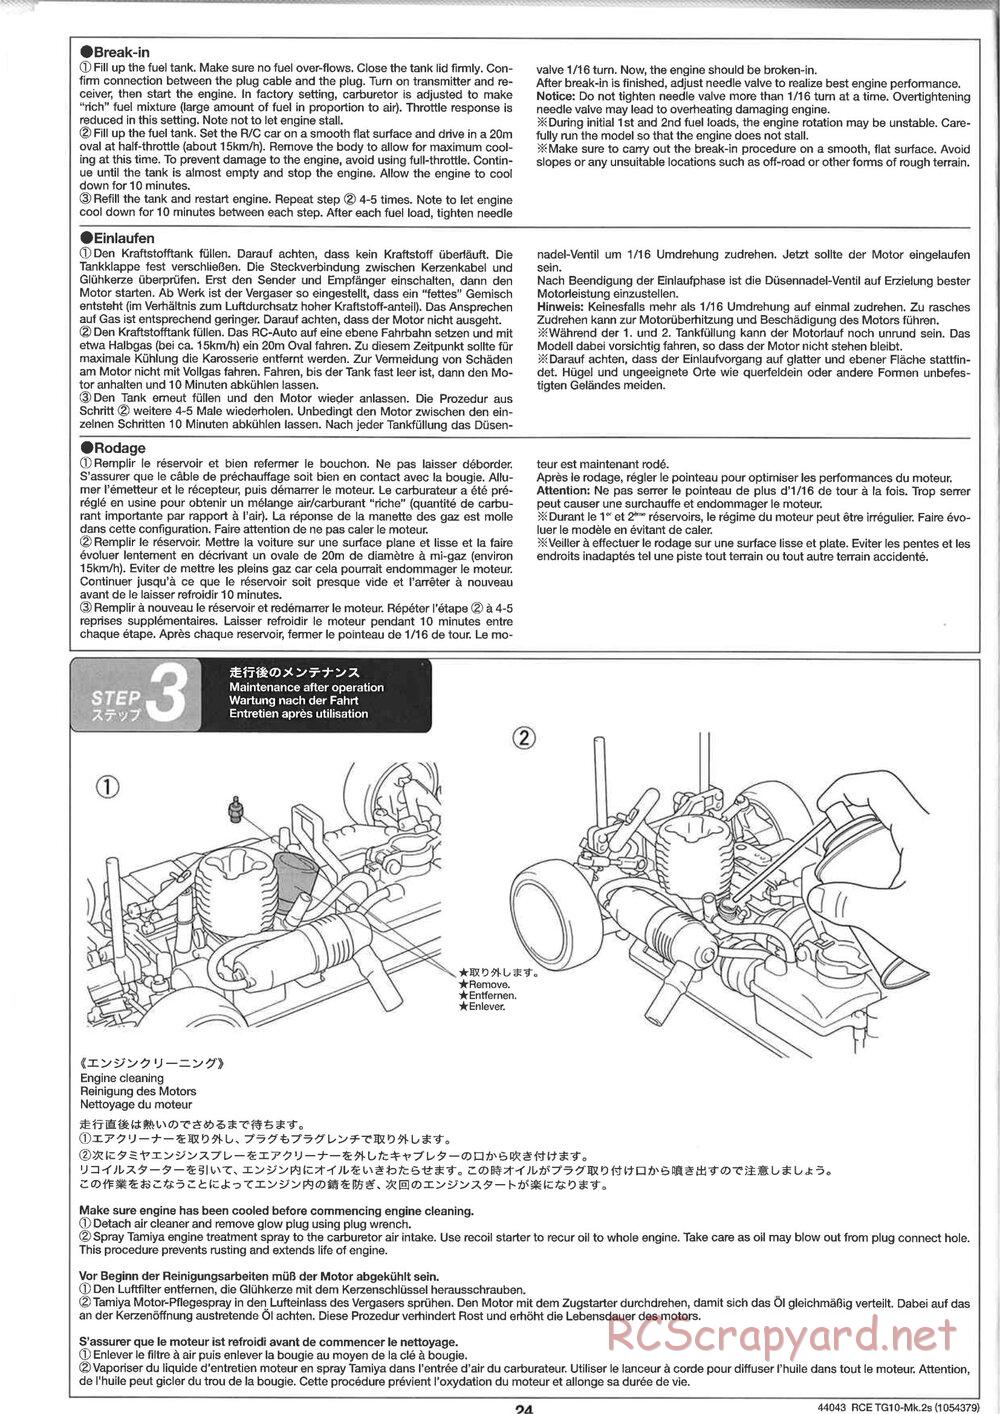 Tamiya - TG10 Mk.2s Chassis - Manual - Page 25